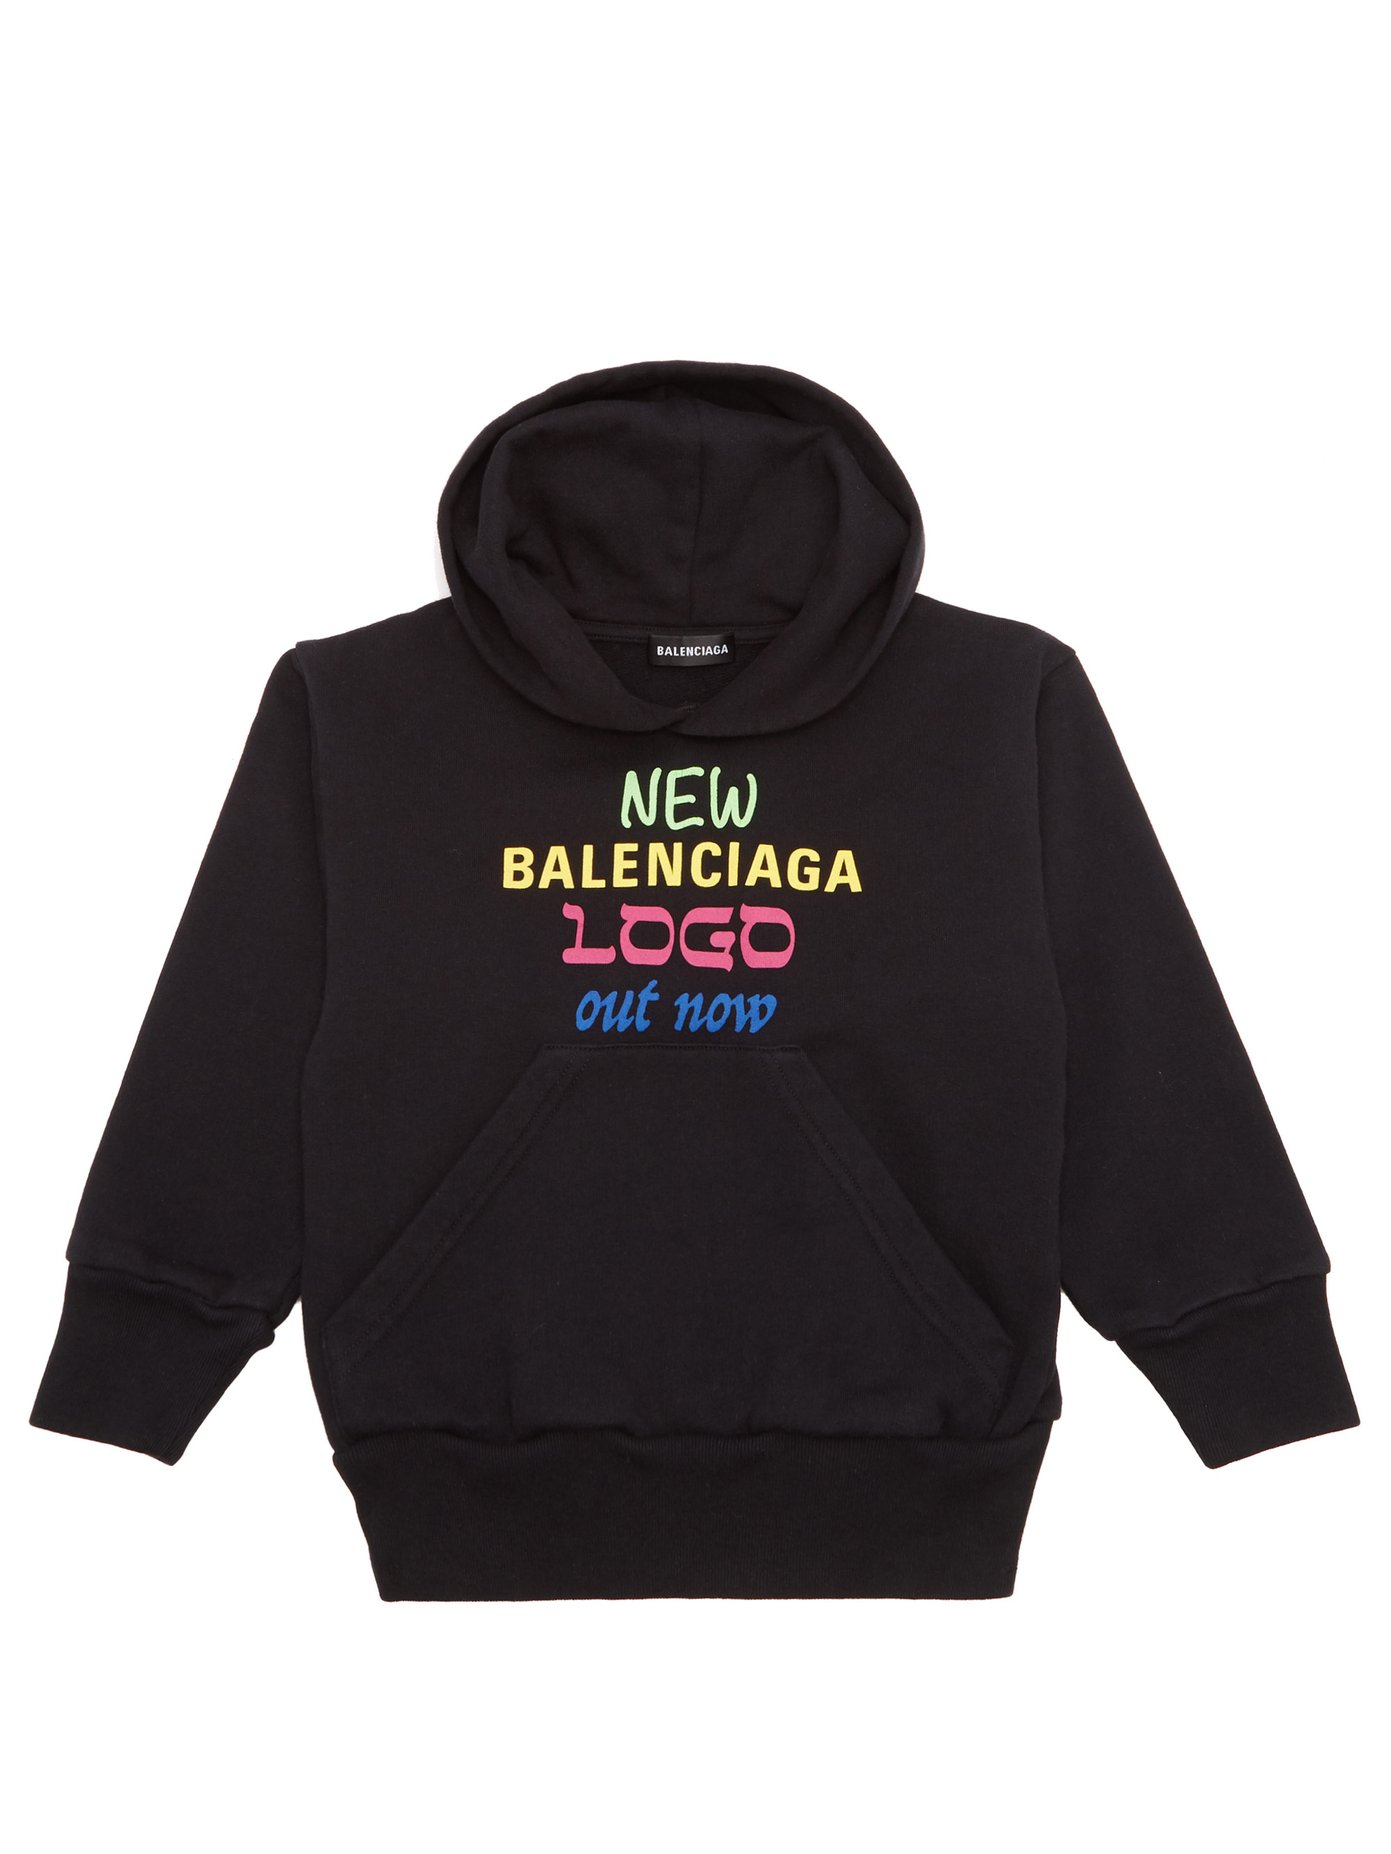 new balenciaga logo out now